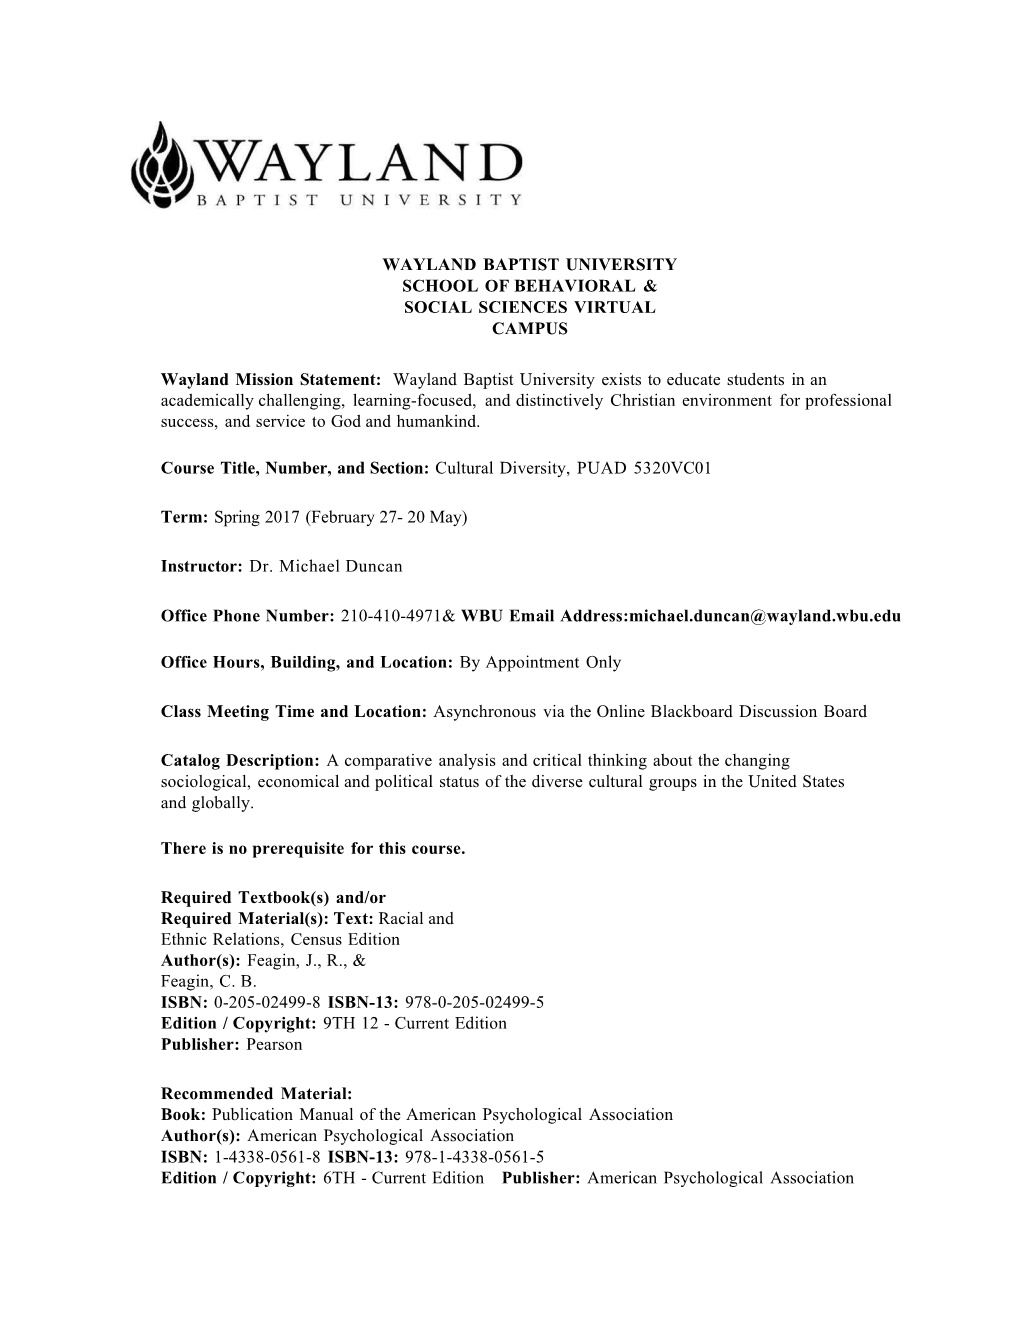 Waylandmissionstatement: Waylandbaptistuniversityexiststoeducatestudentsinanacademically